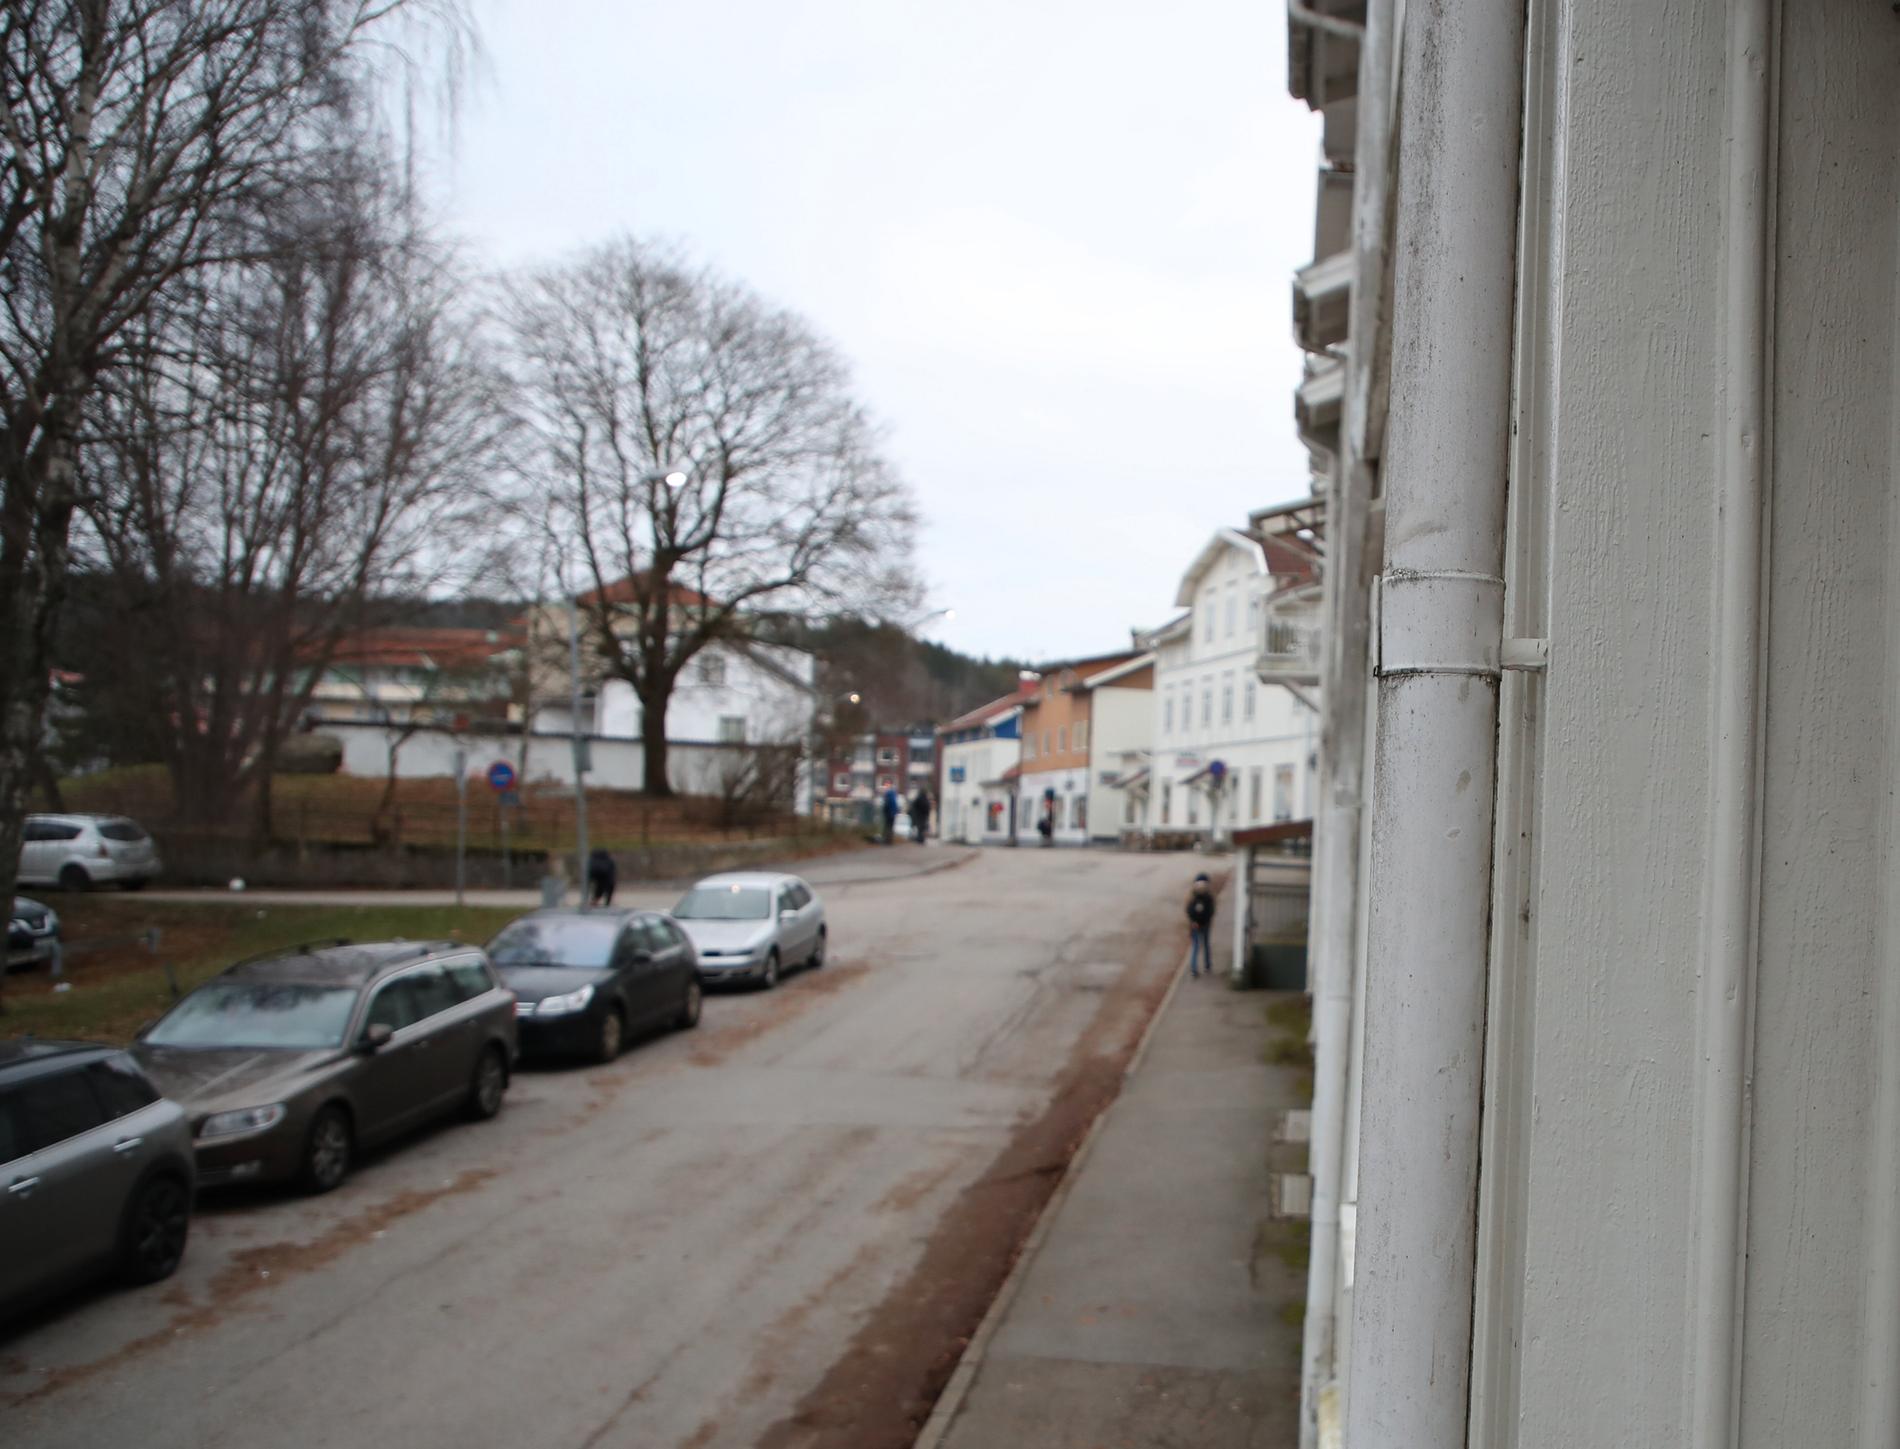 I mitten av december gjorde Säkerhetspolisen insatser på flera platser i västra Sverige, bland annat i Lilla Edet.